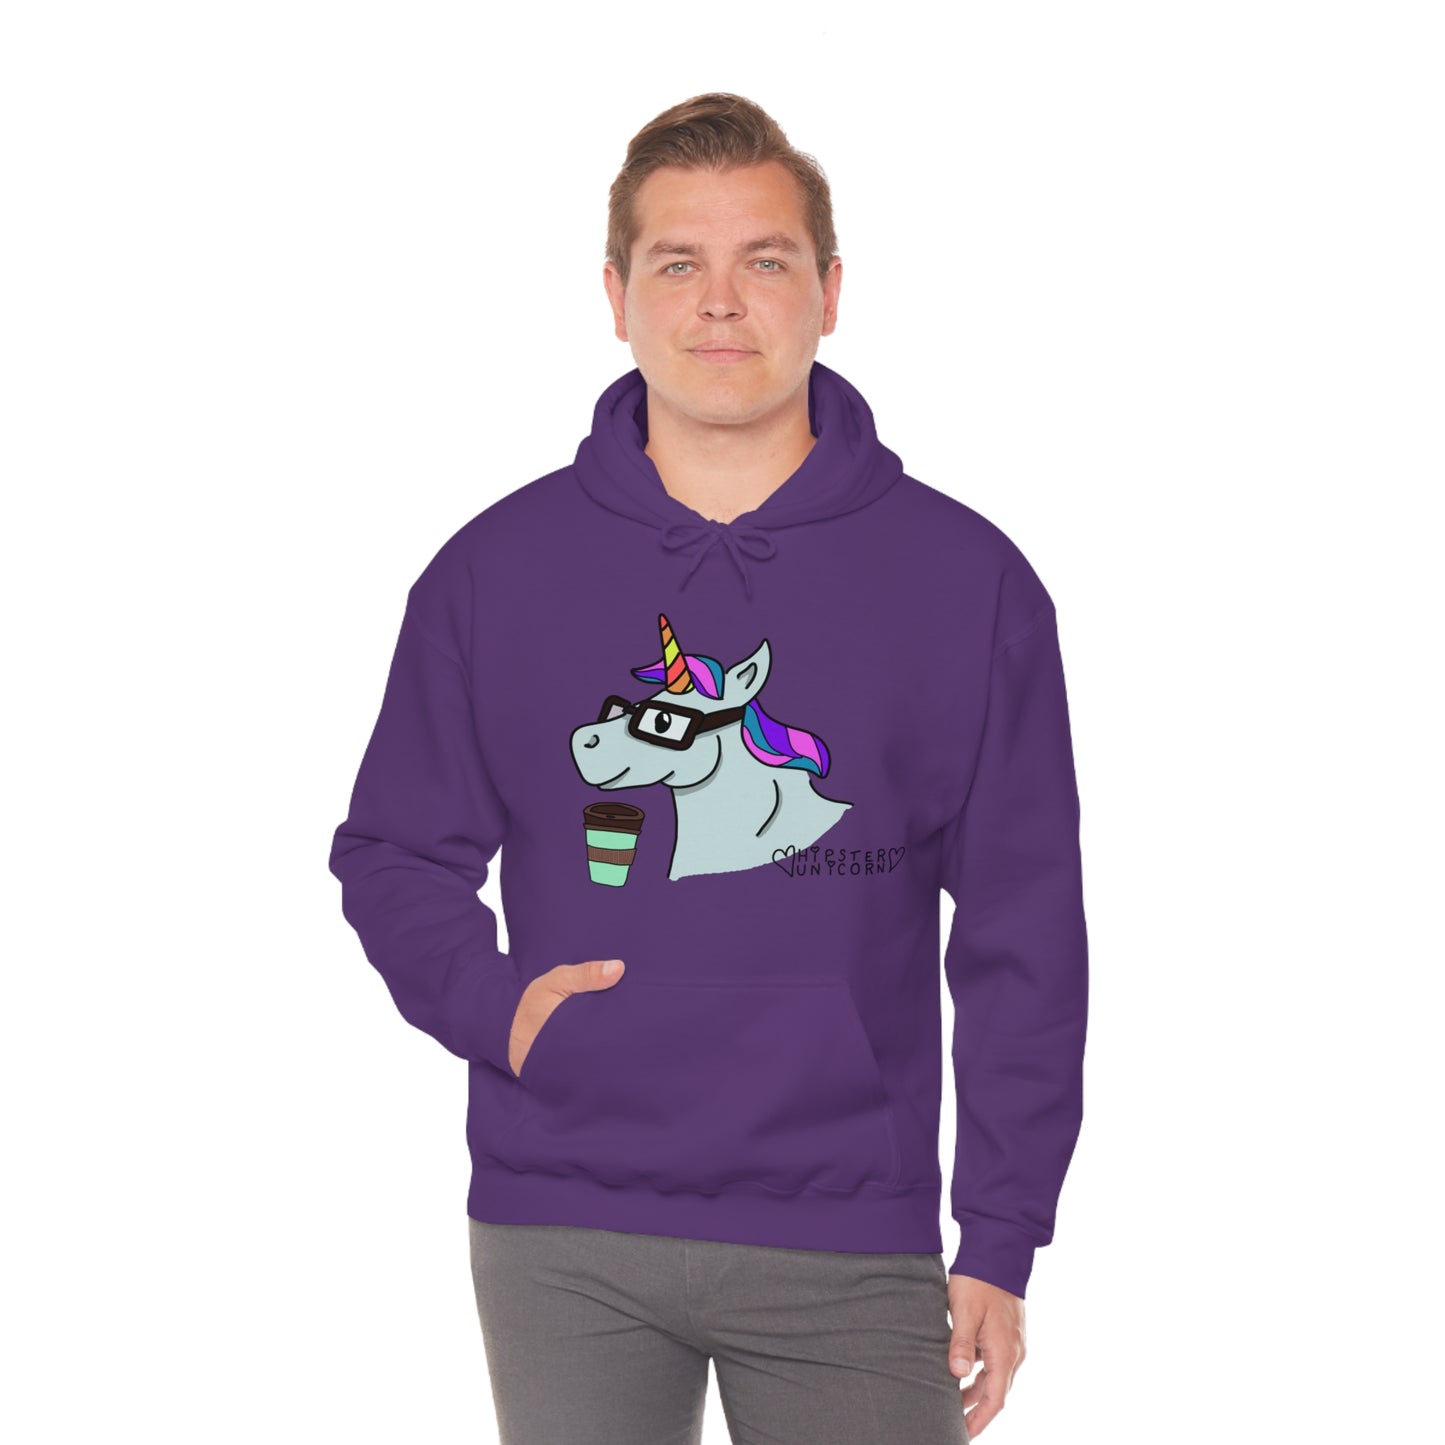 Unicorn & Coffee Sweatshirt